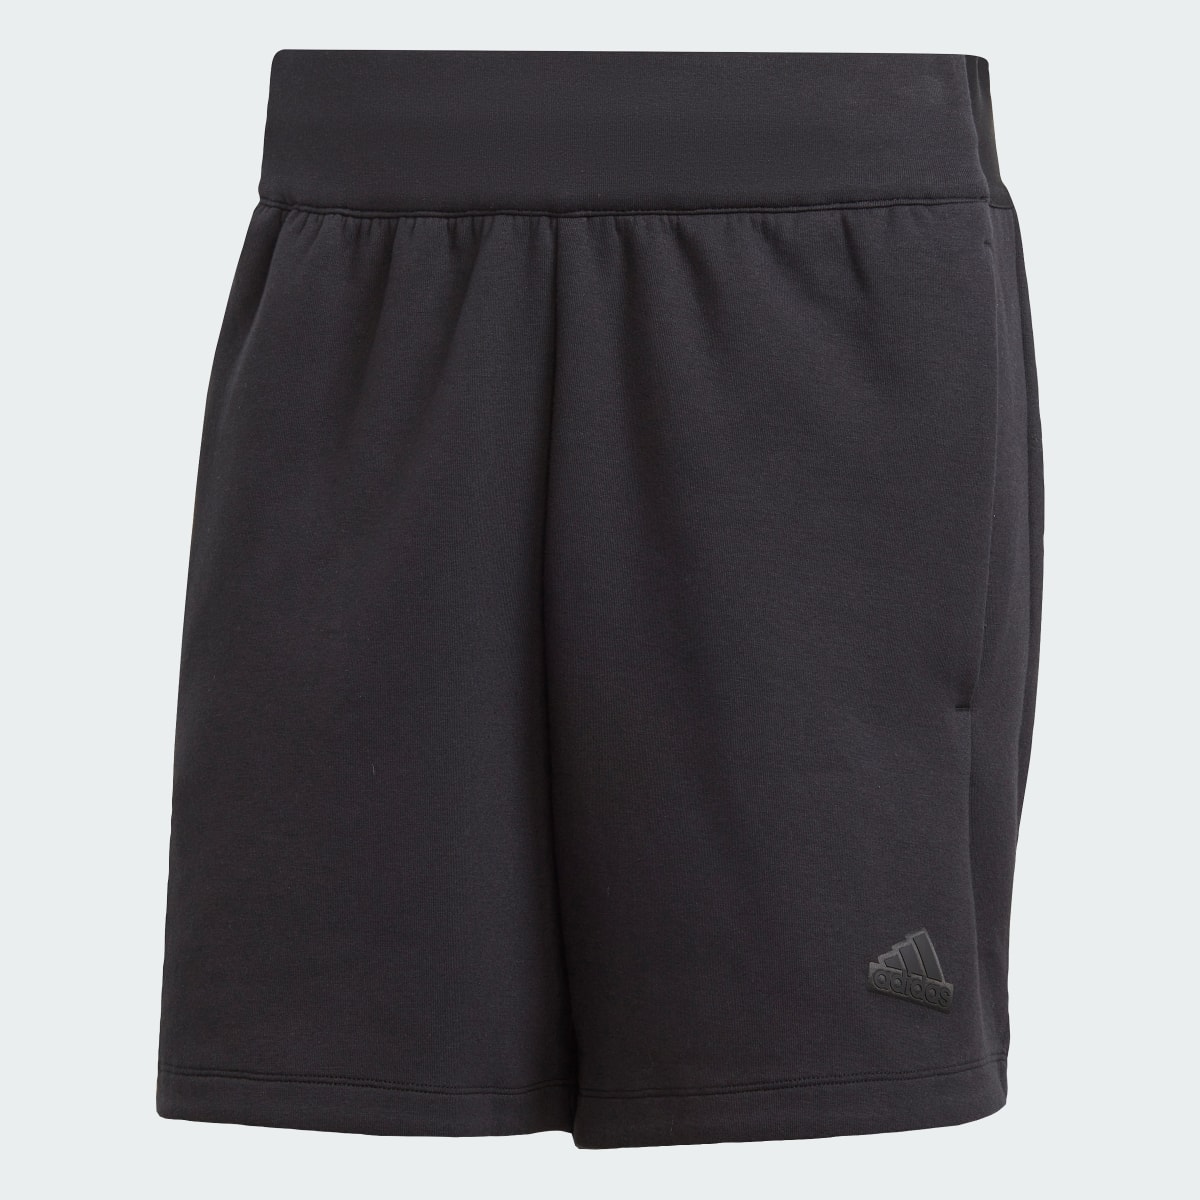 Adidas Premium Z.N.E. Shorts. 4